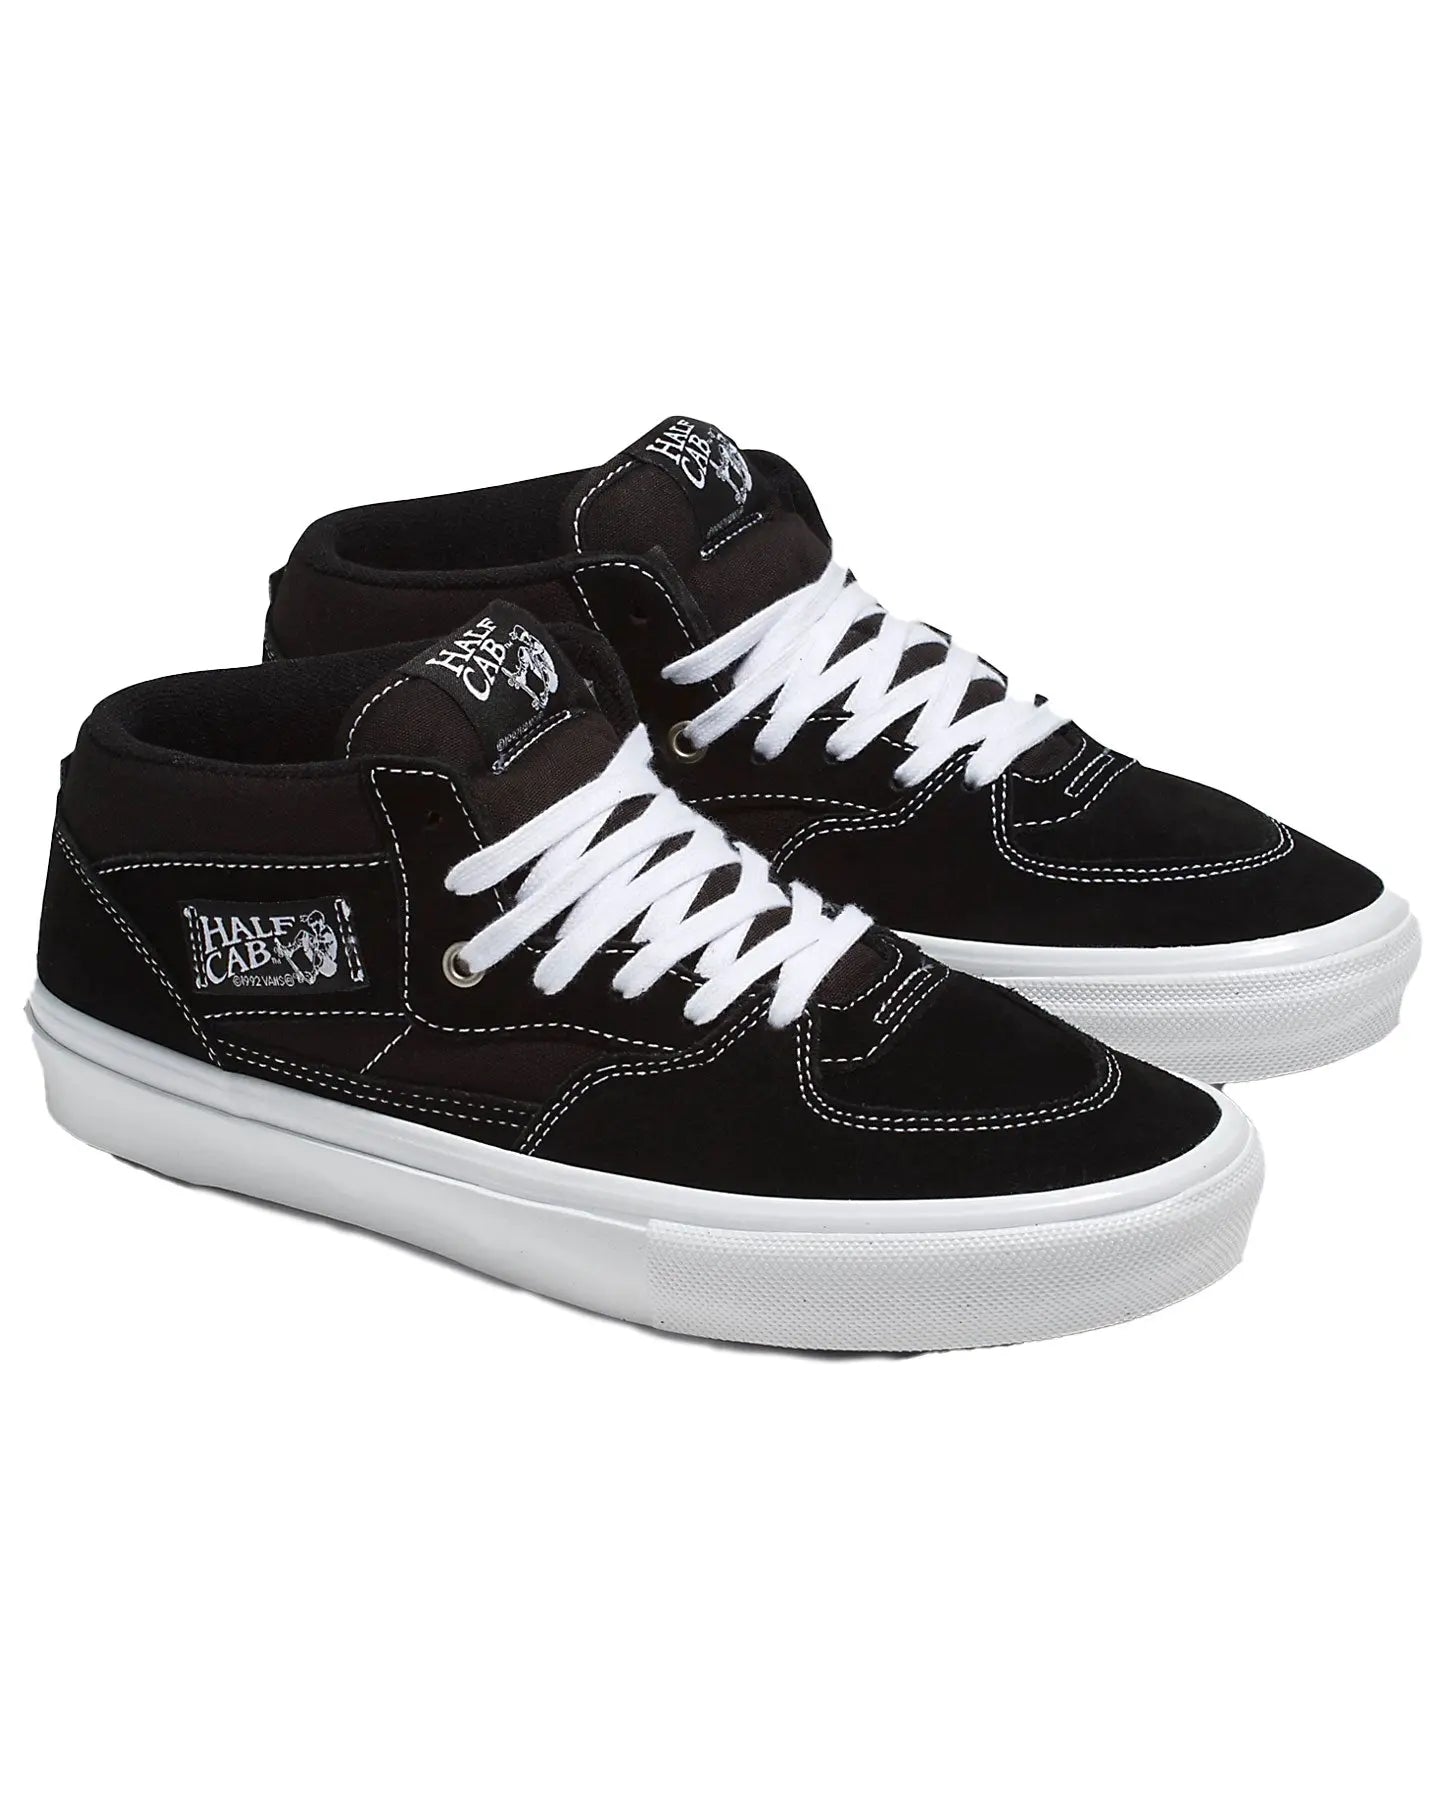 Vans Skate Half Cab - Black / White Footwear